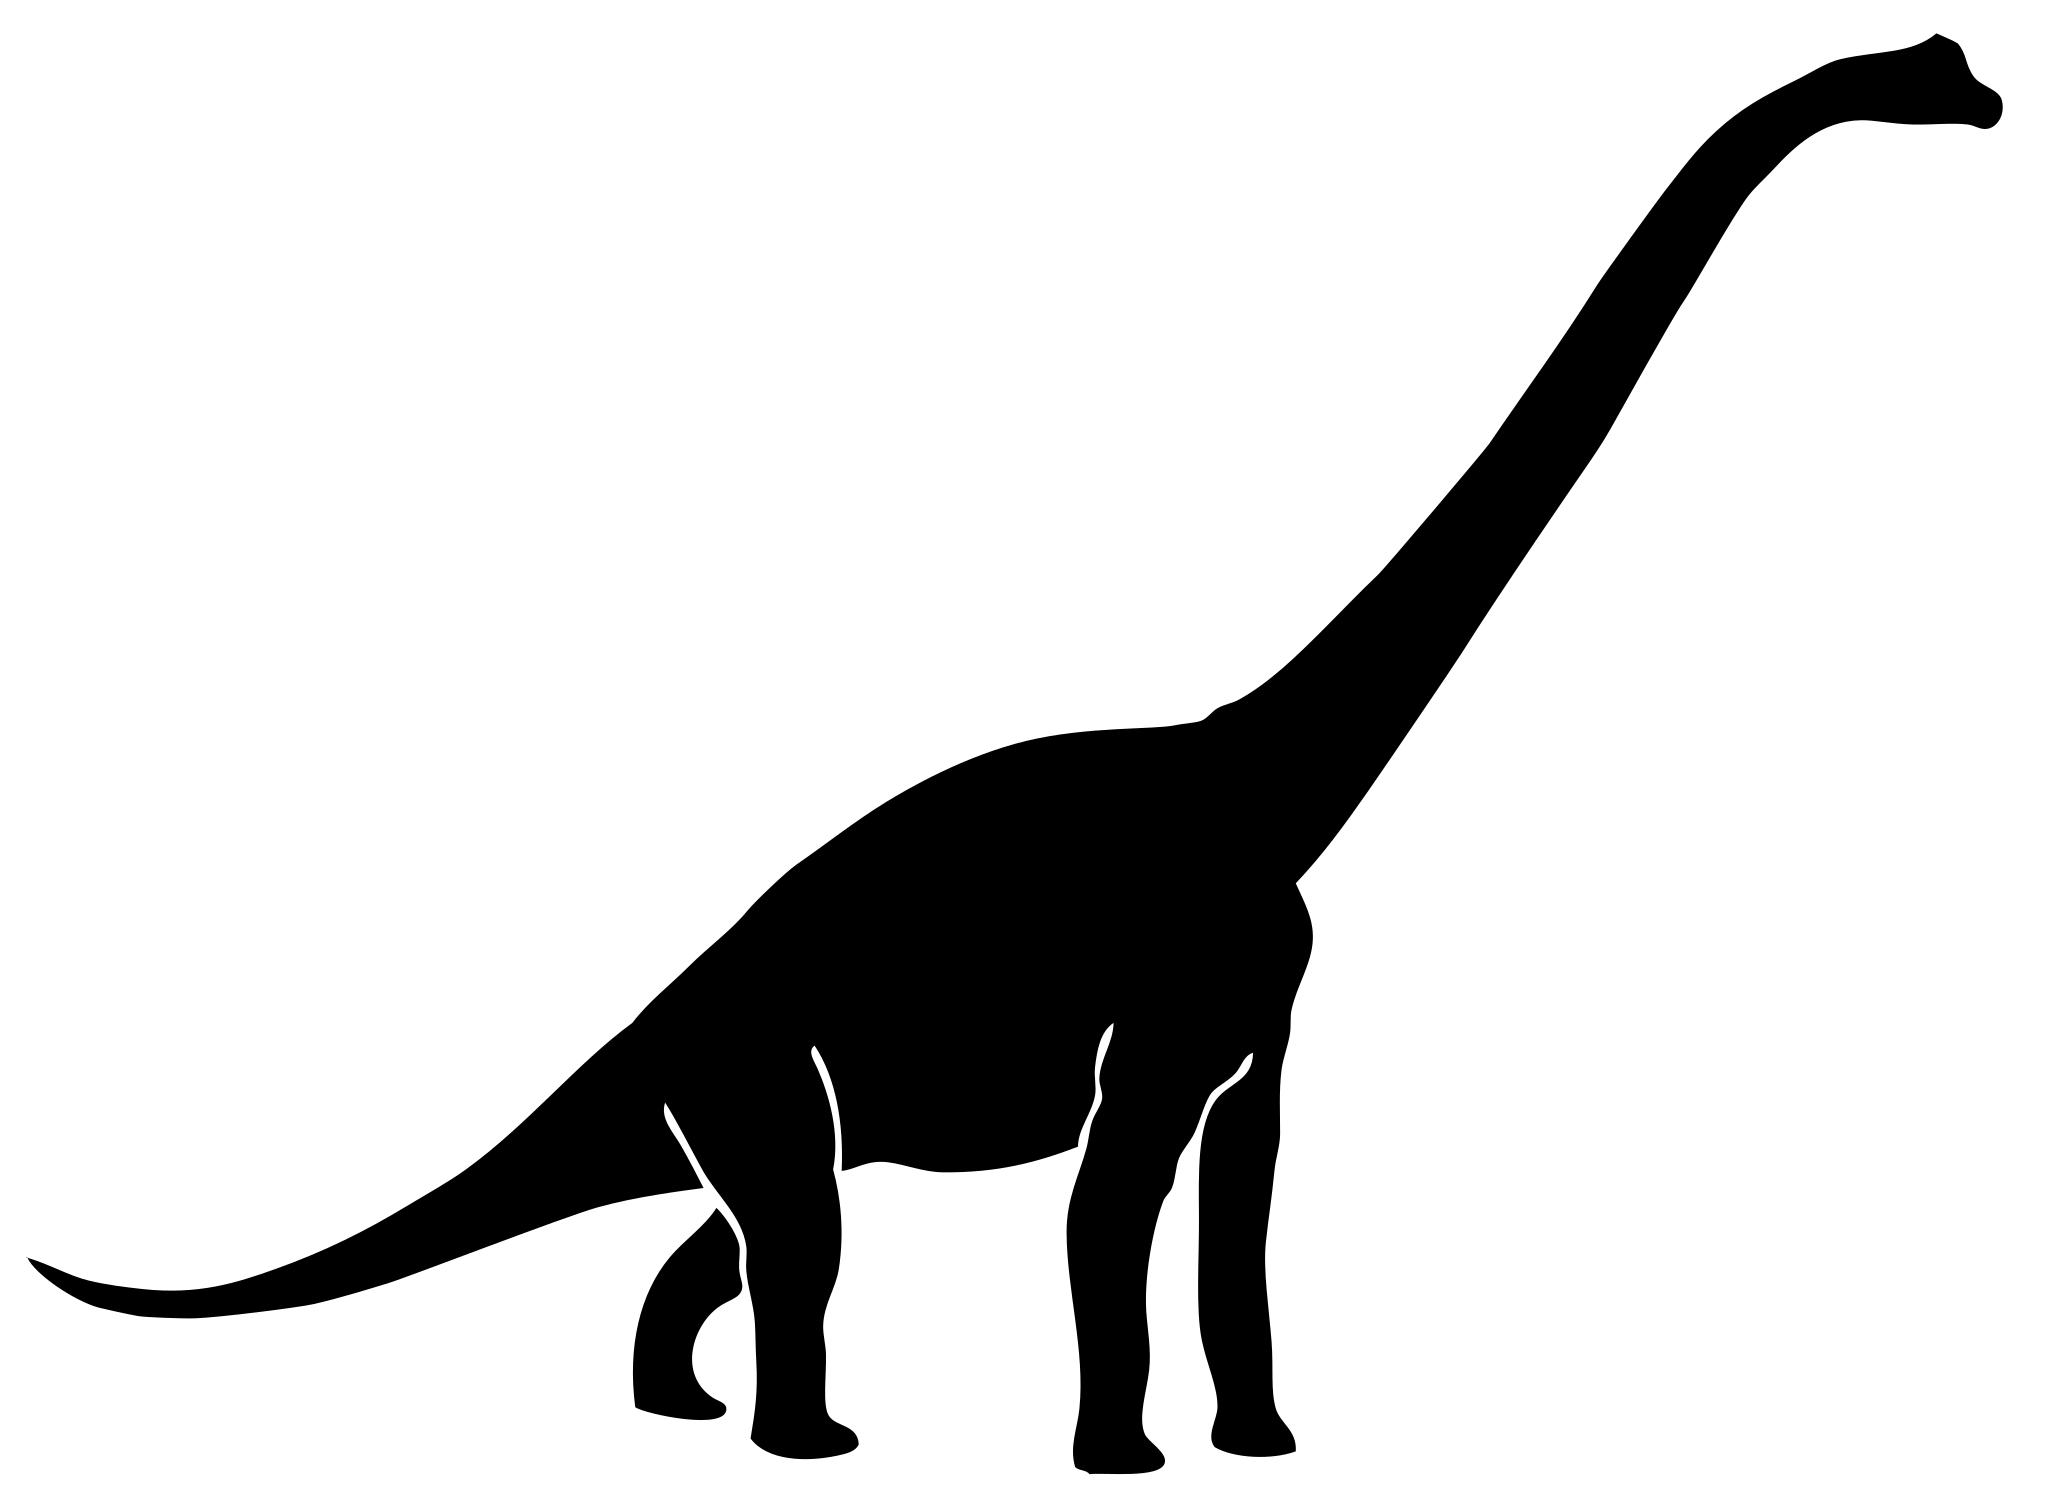 Брахиозавр и Диплодок